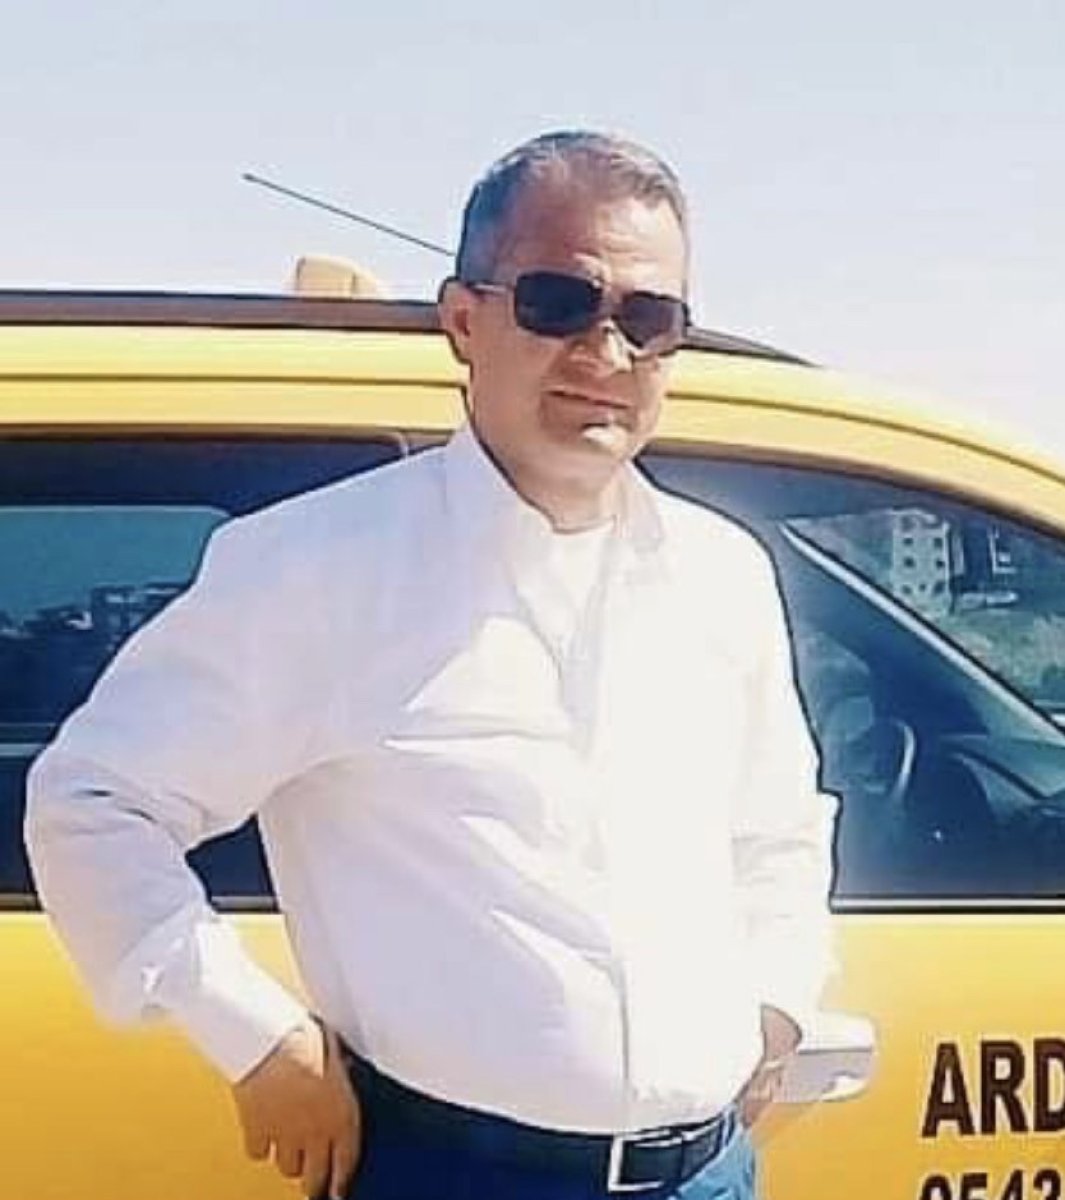 Adana’da taksi şoförü boğazından bıçaklanarak öldürüldü #2